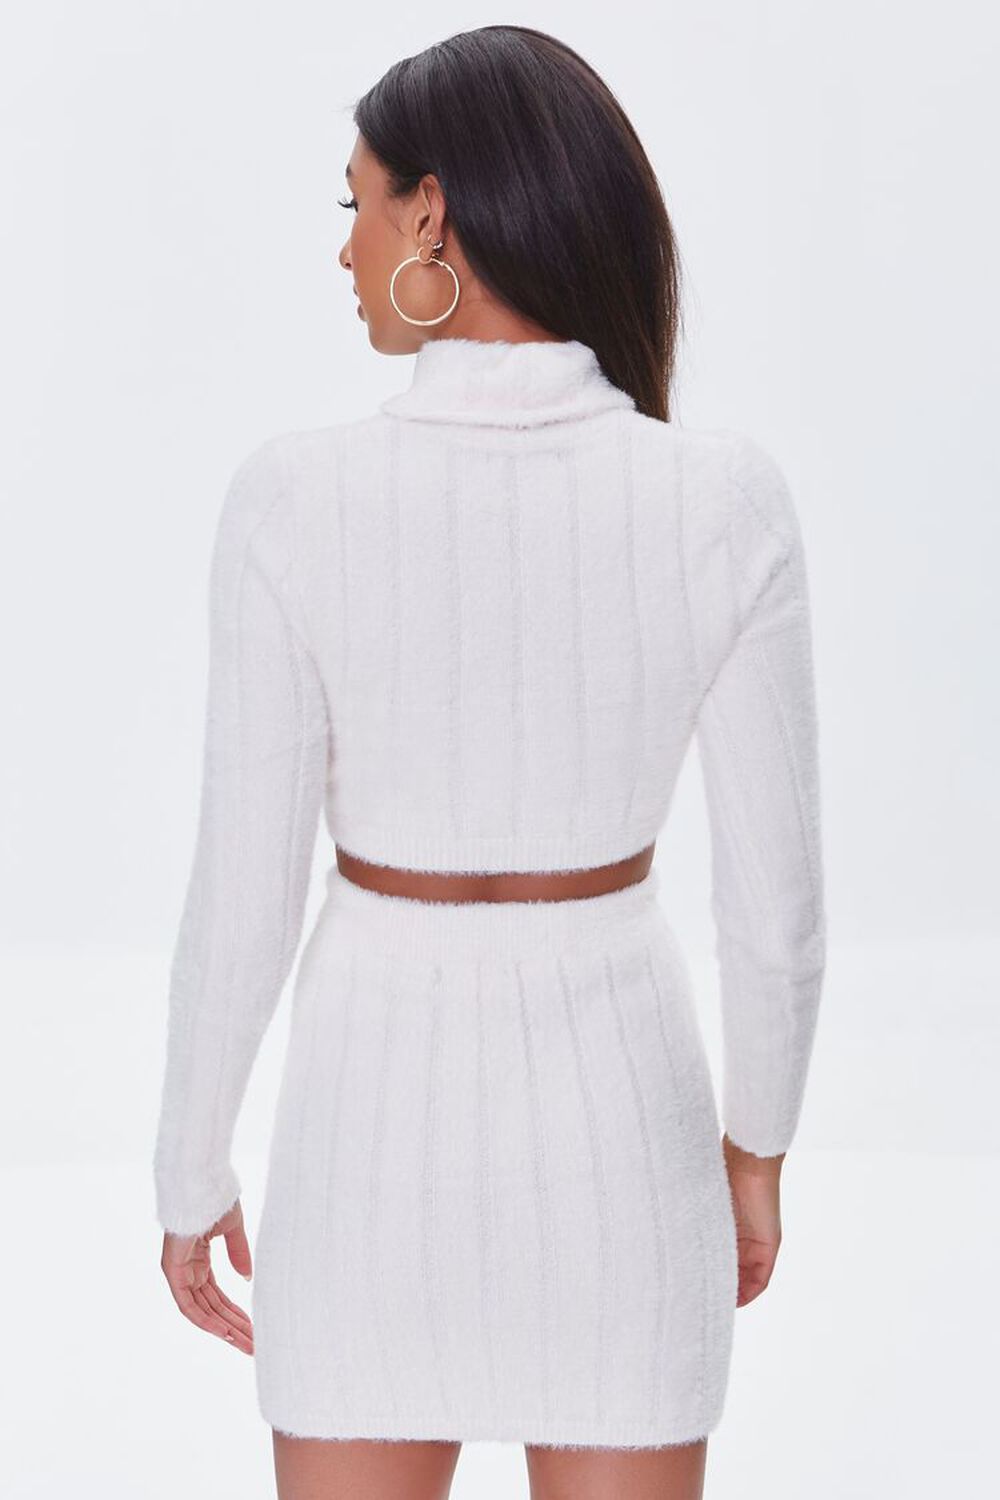 WHITE Fuzzy Crop Top & Mini Skirt Set, image 3